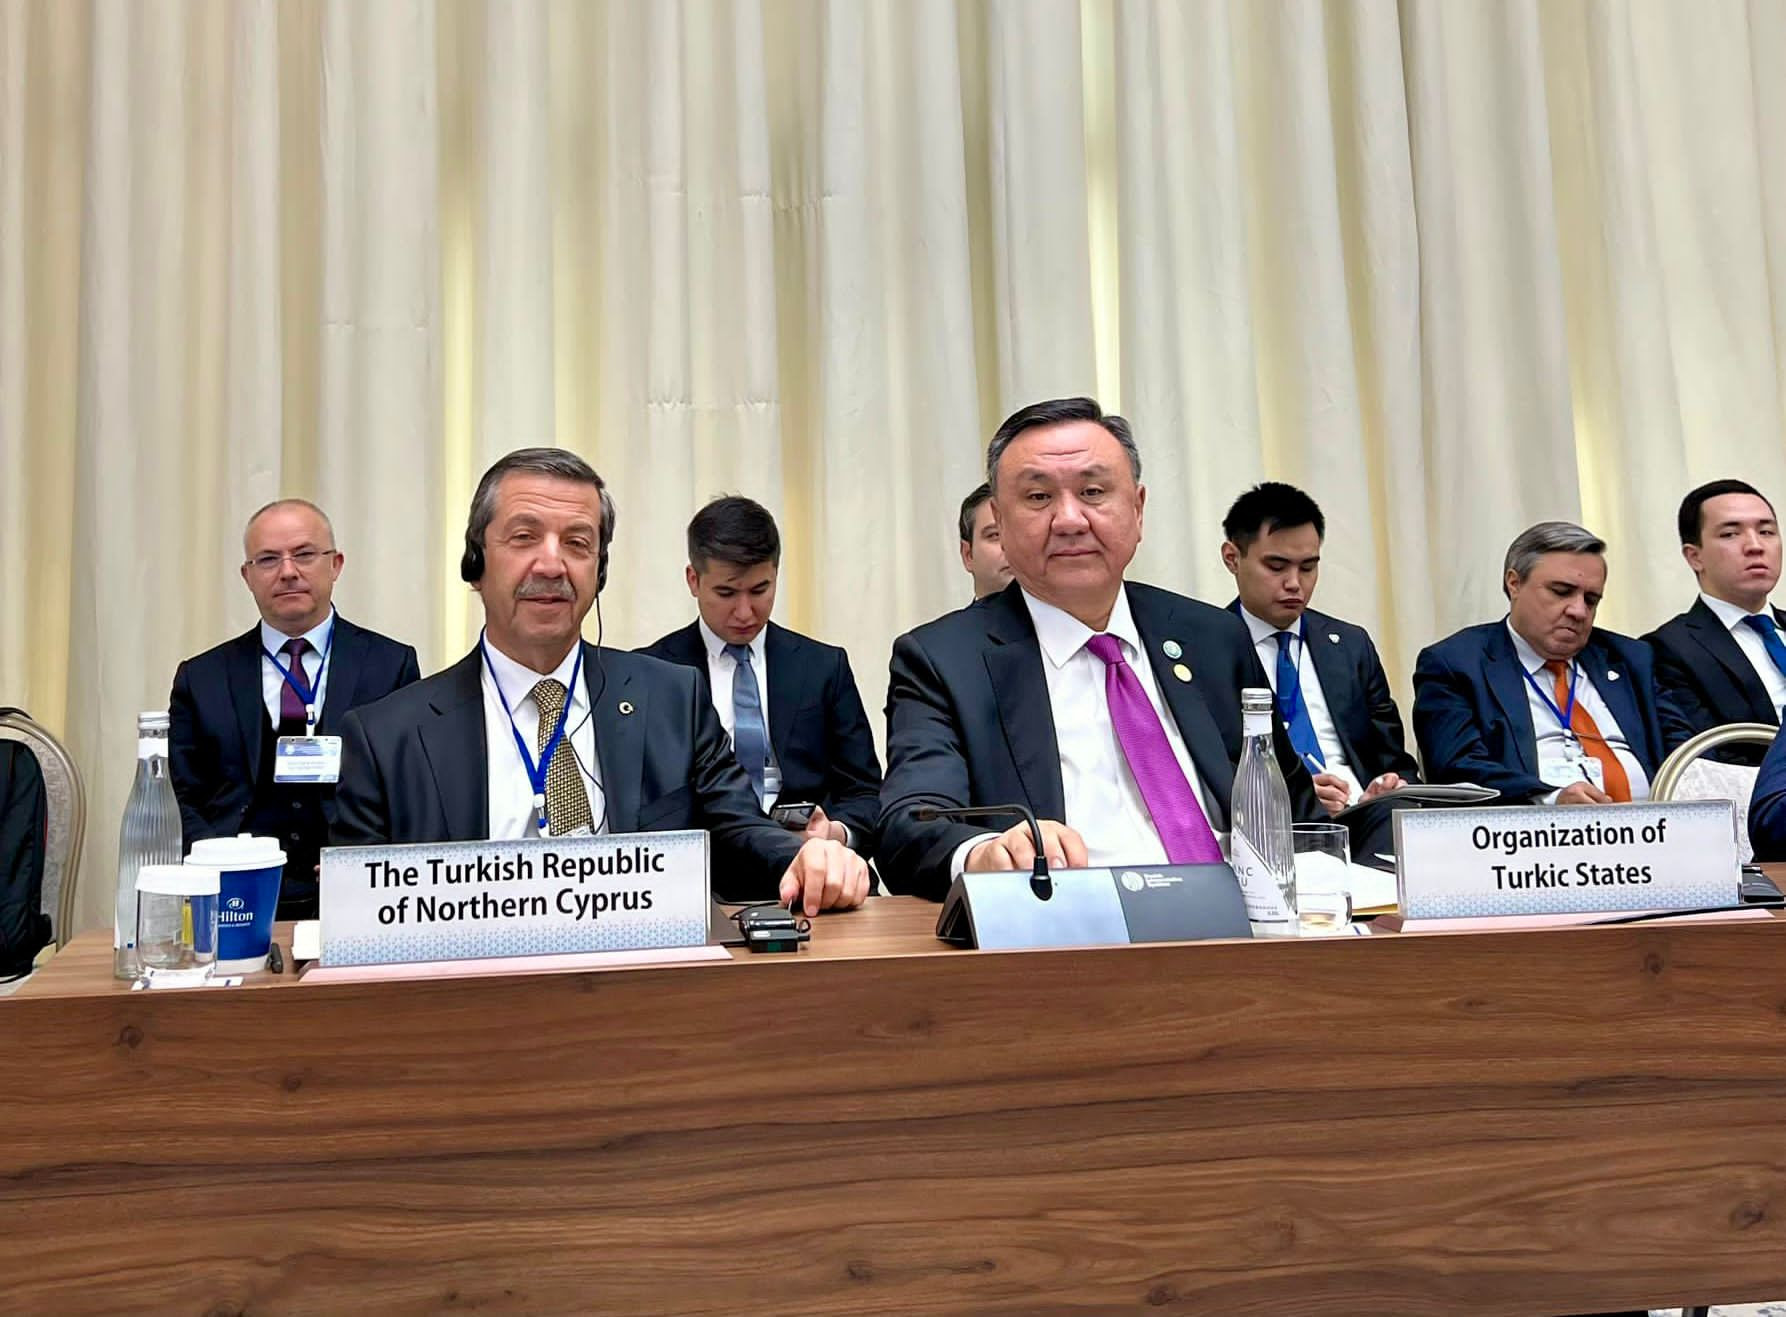 Dışişleri Bakanı Tahsin Ertuğruloğlu Özbekistan’da konuştu: Çıktığımız yeni yoldan geri dönüş yoktur